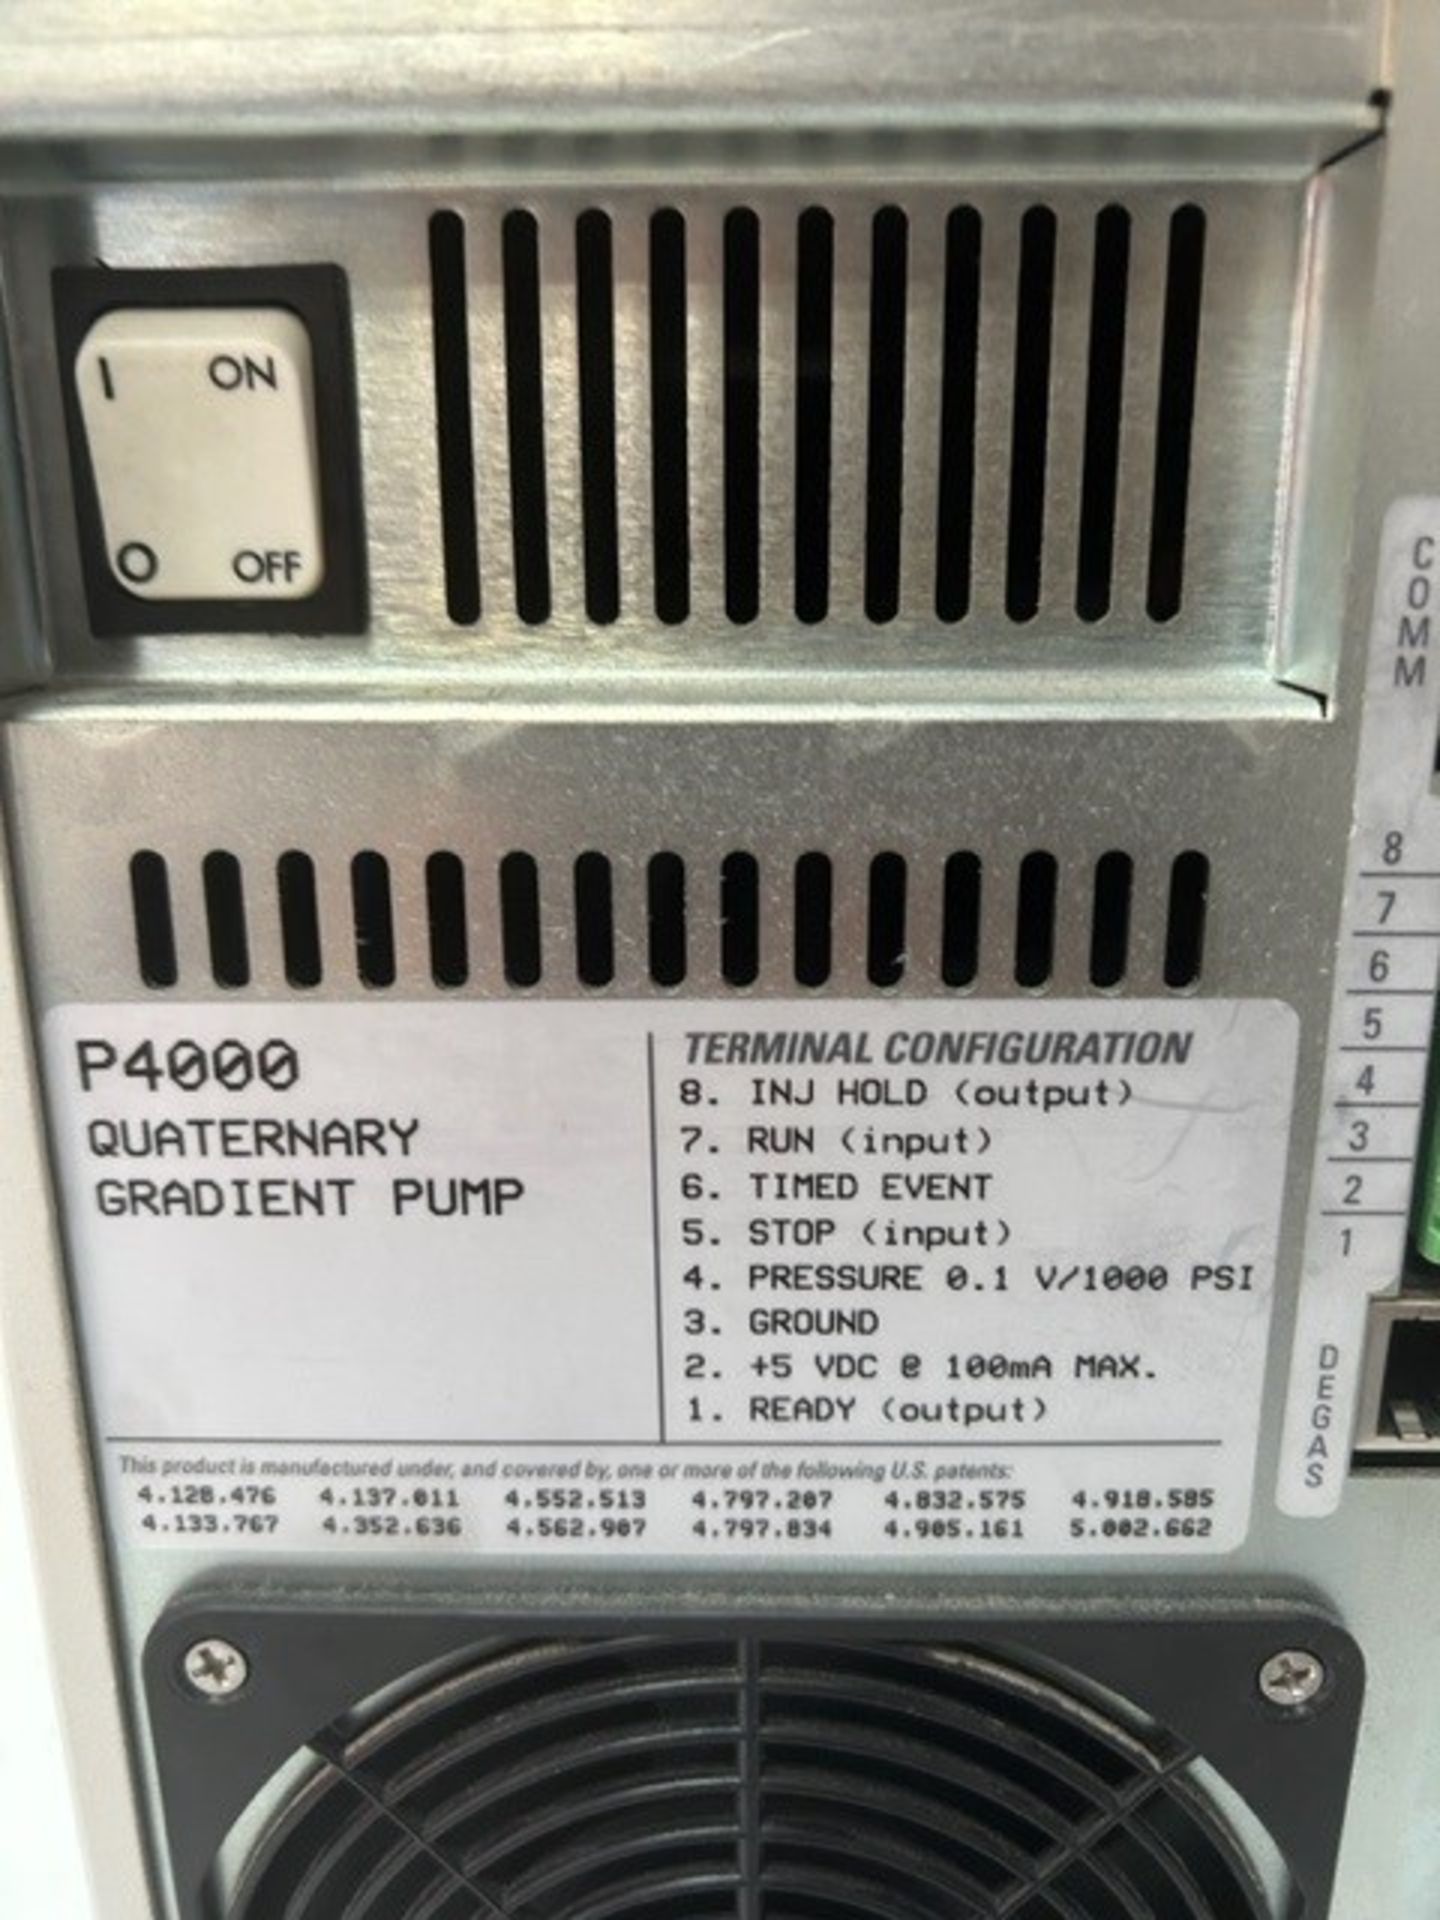 Quaternary Gradient Pump P4000 - Image 7 of 7